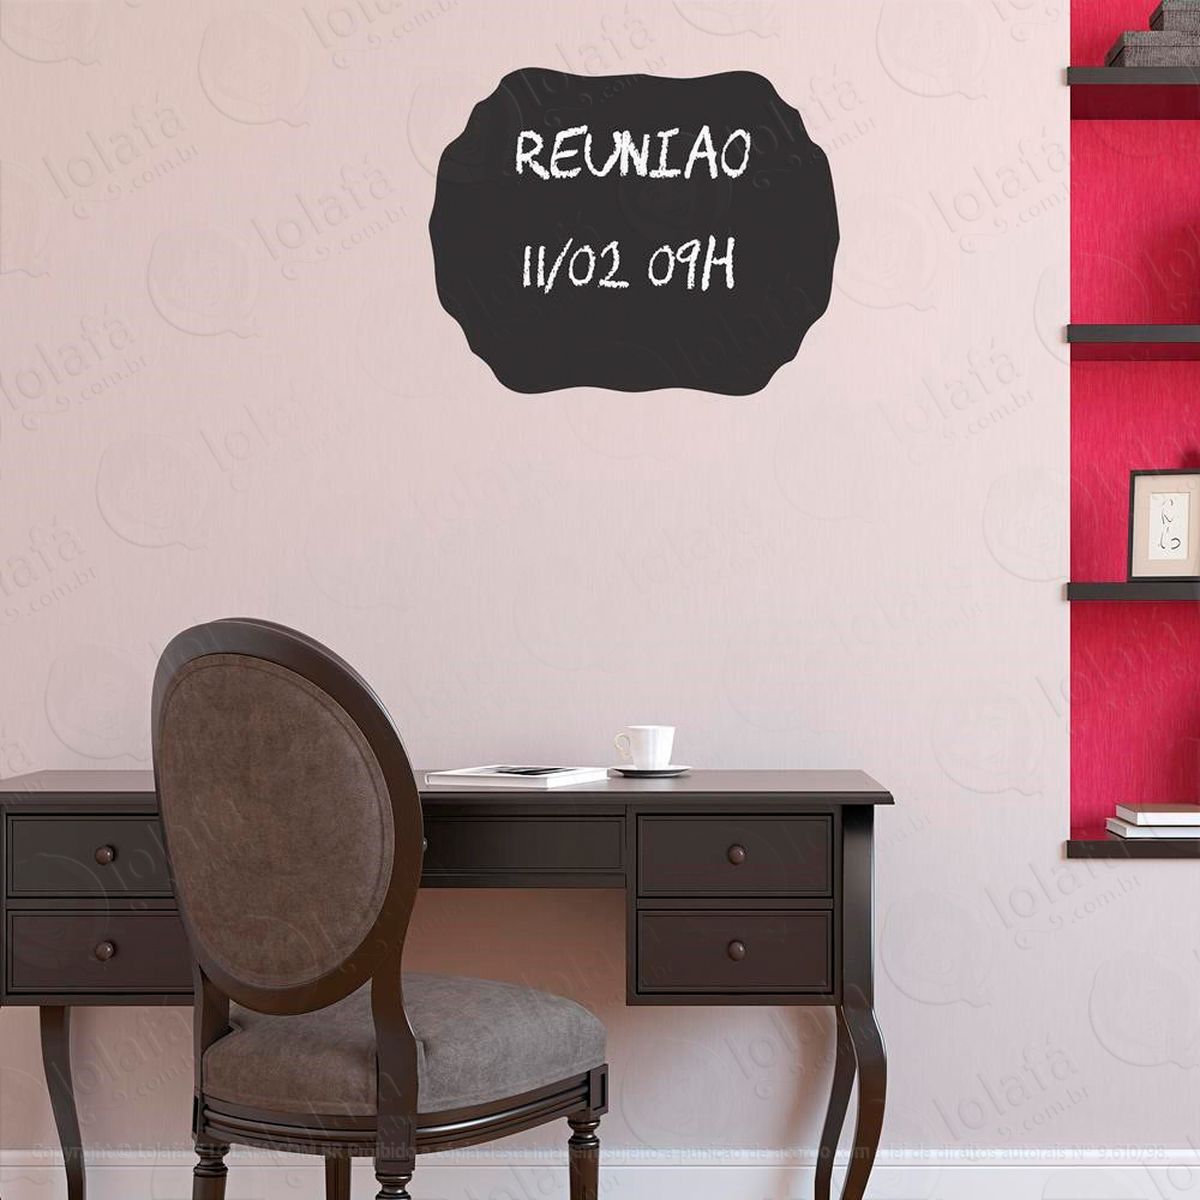 moldura adesivo lousa quadro negro de parede para escrever com giz - mod:299